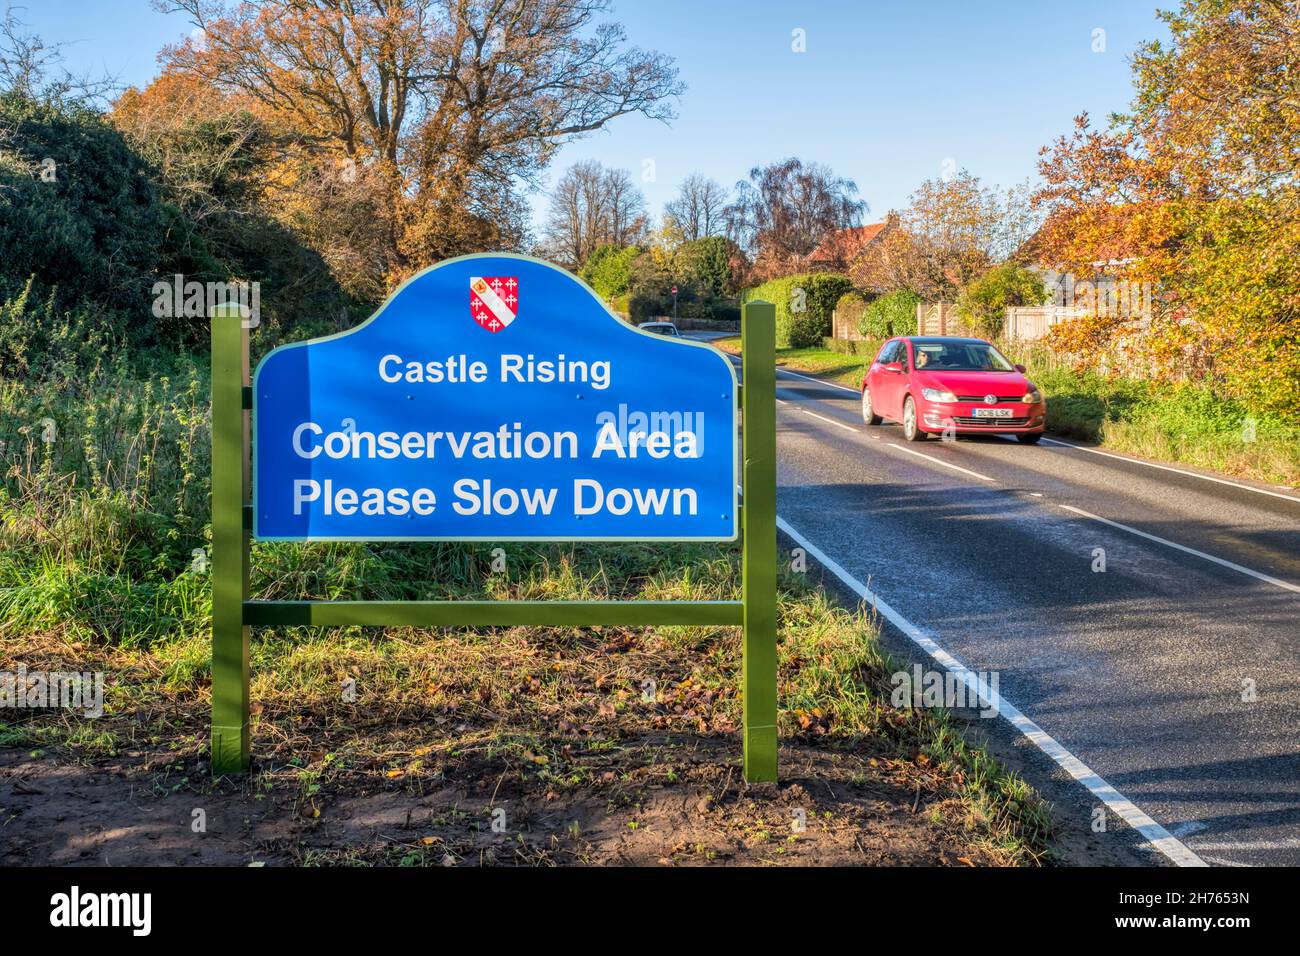 Voitures passant le panneau lecture zone de conservation Veuillez ralentir à l'entrée du village de Castle Rising à Norfolk. Banque D'Images